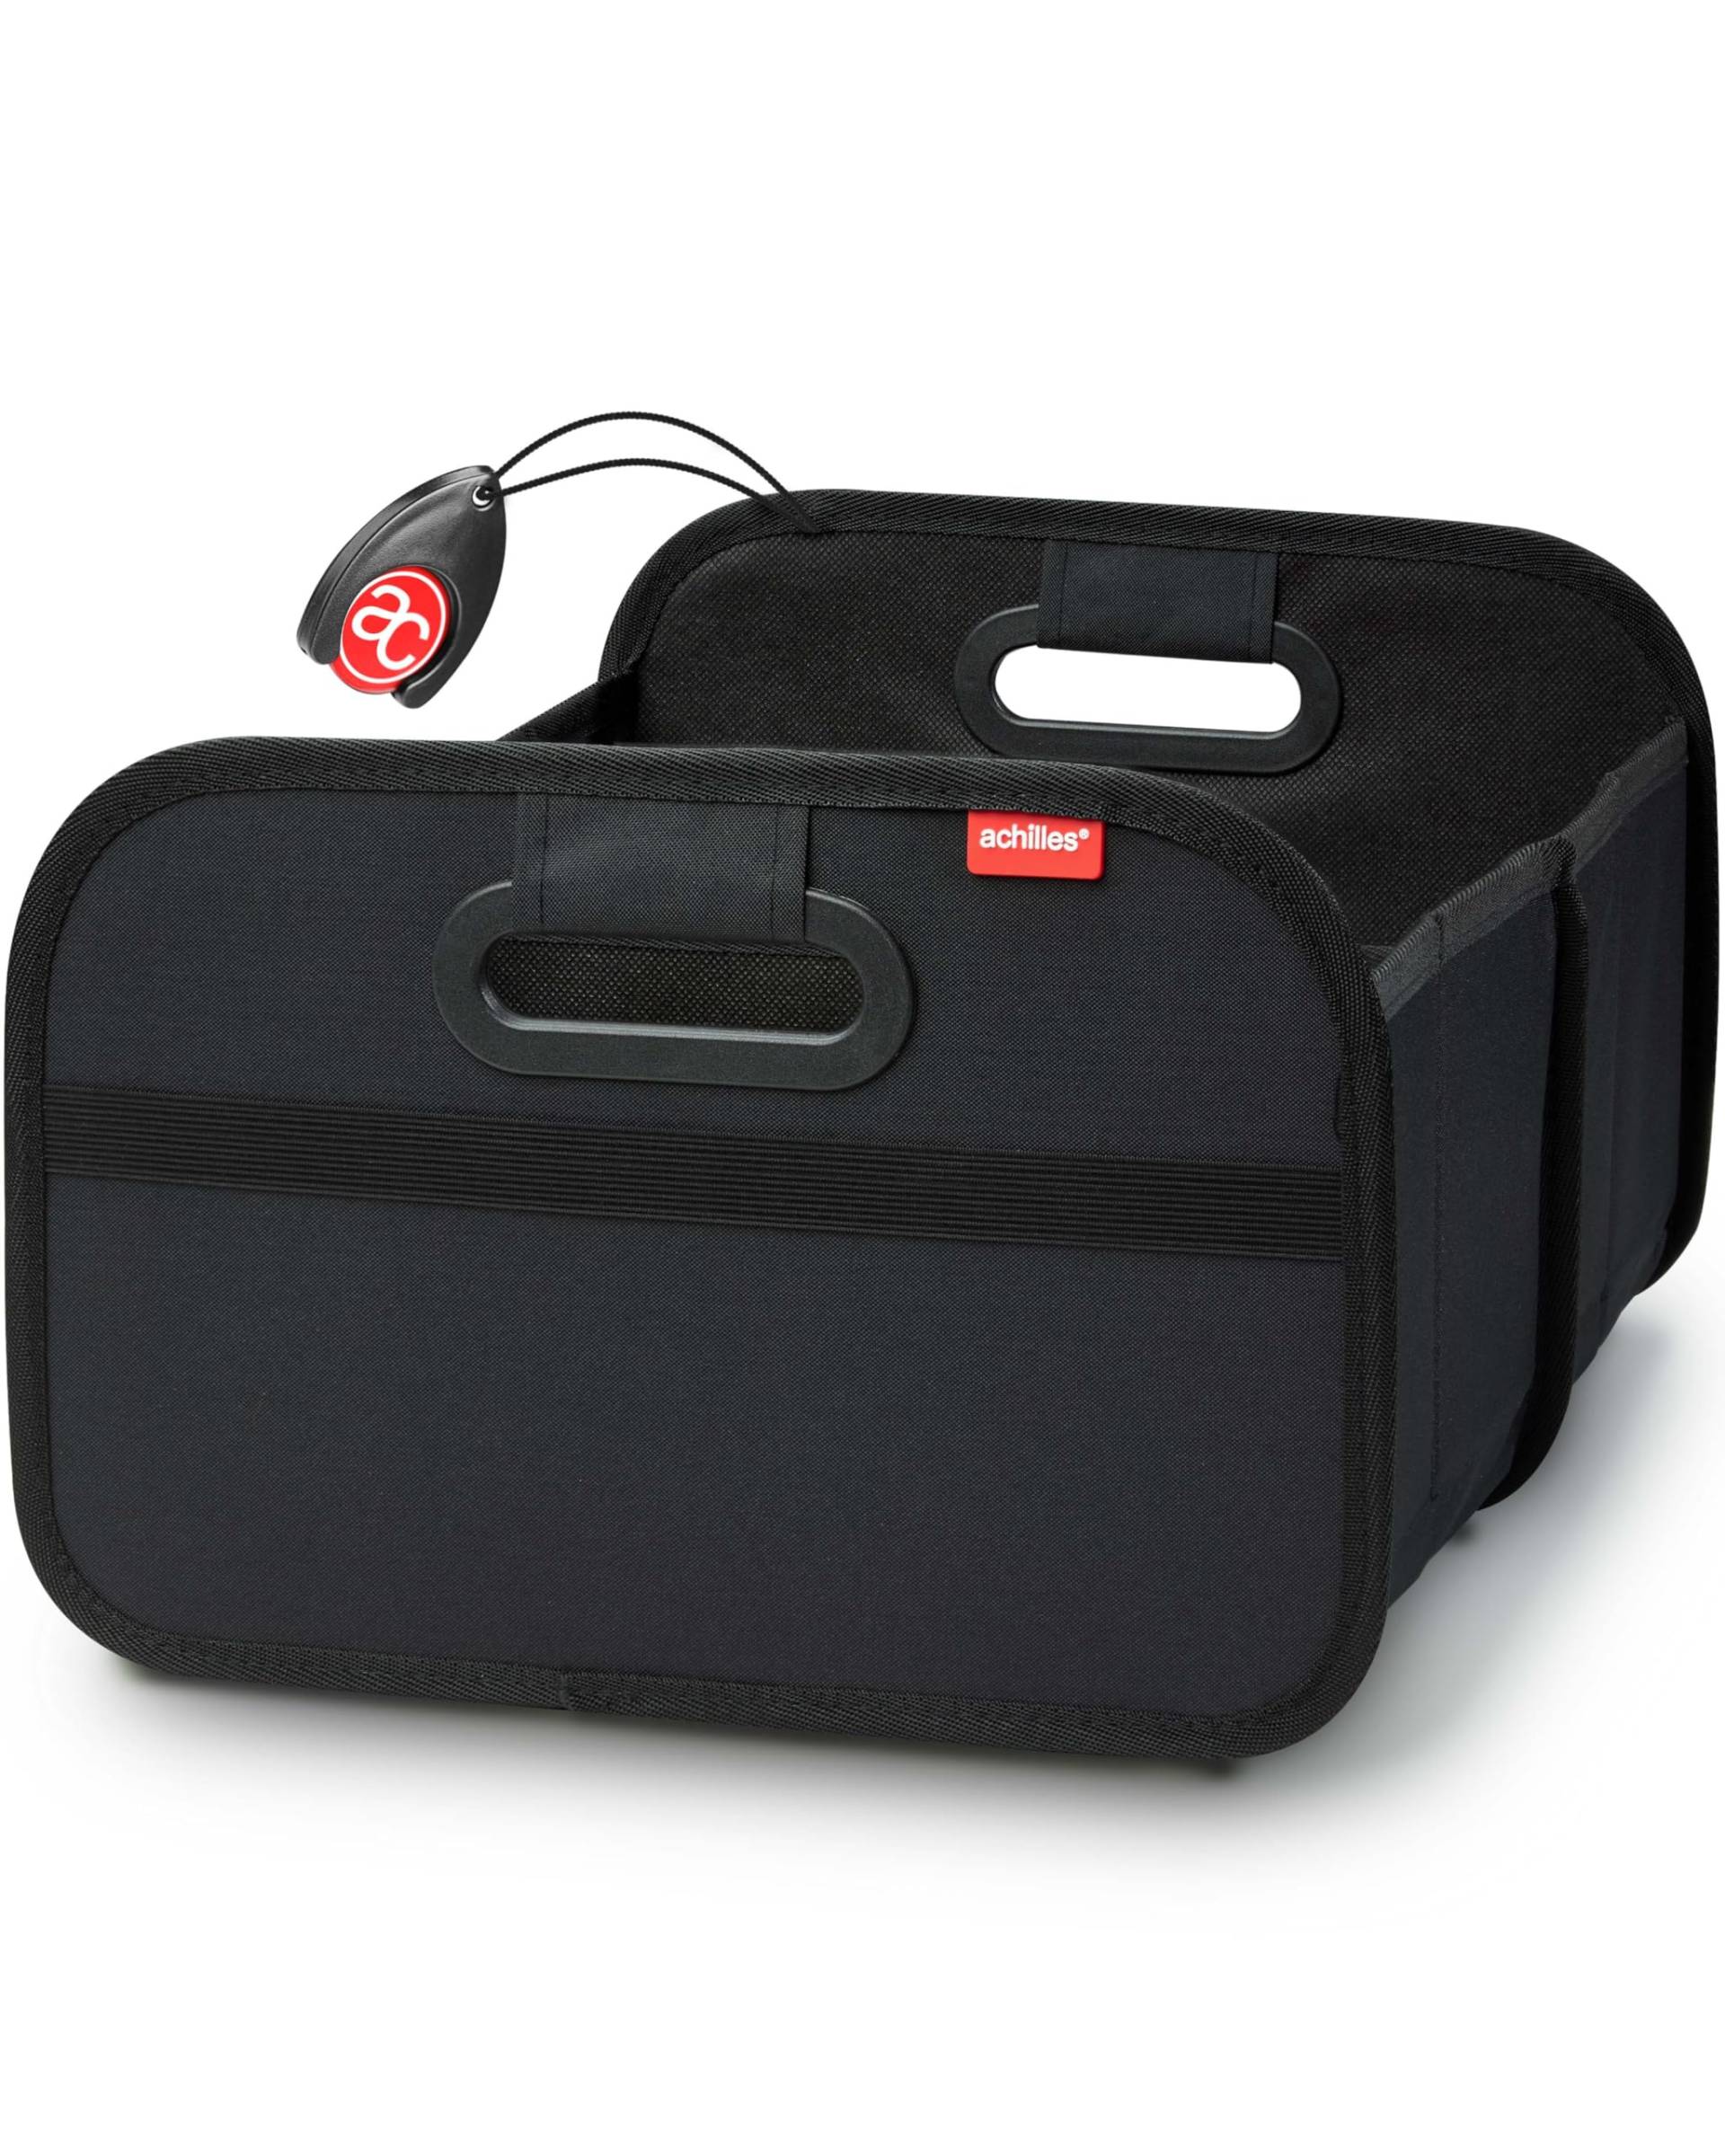 achilles Kofferraumtasche faltbar - Kofferraum-Organizer, Auto Faltbox, Autotasche, Einkaufsbox, verstärkt und stabil, inkl. Einkaufs-Chip von achilles